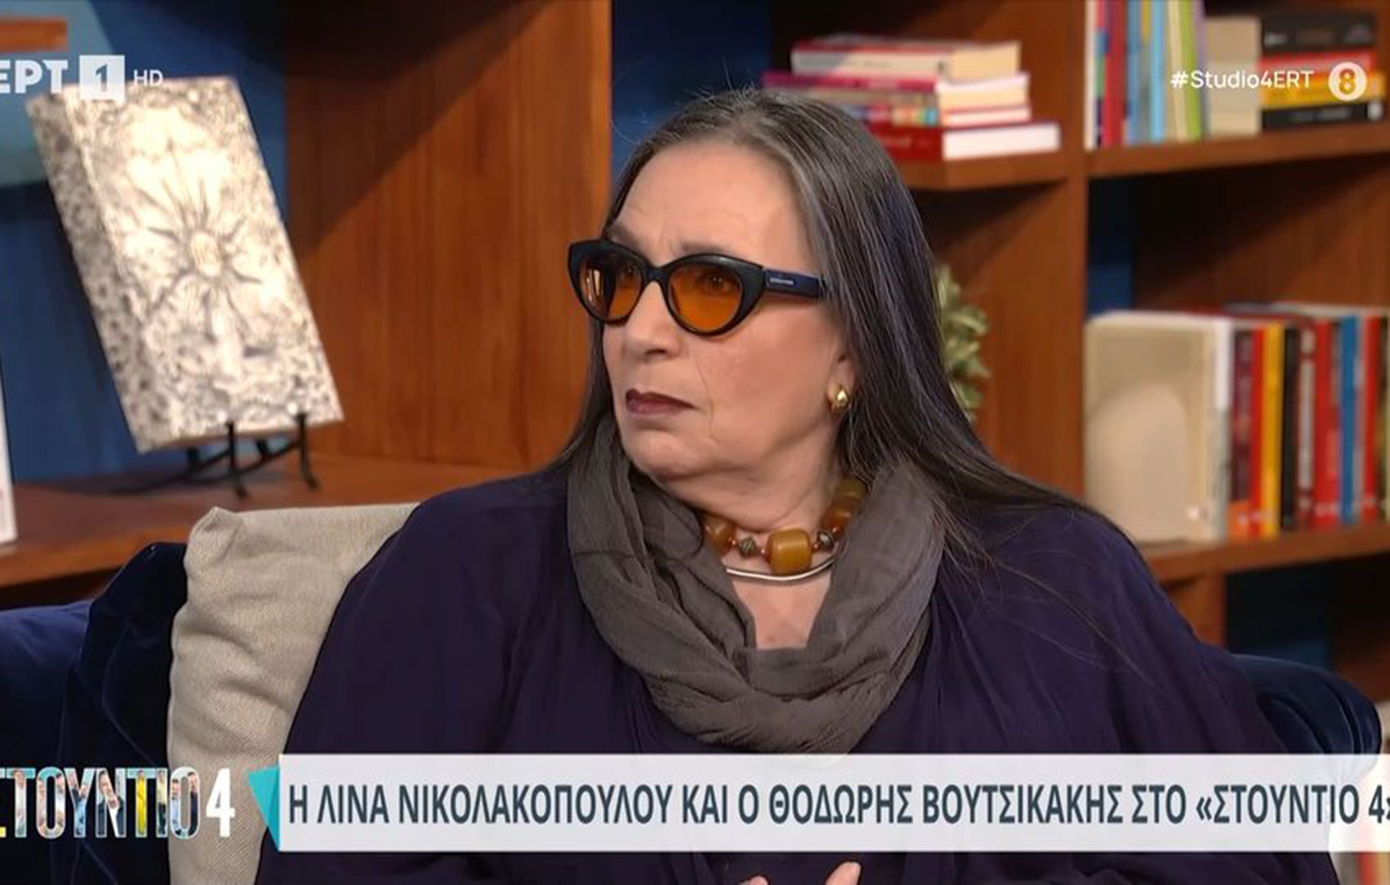 Λίνα Νικολακοπούλου: Ο κόσμος θέλει να βλέπει νέες γυναίκες στην τηλεόραση, όσο ρατσιστικό κι αν είναι αυτό